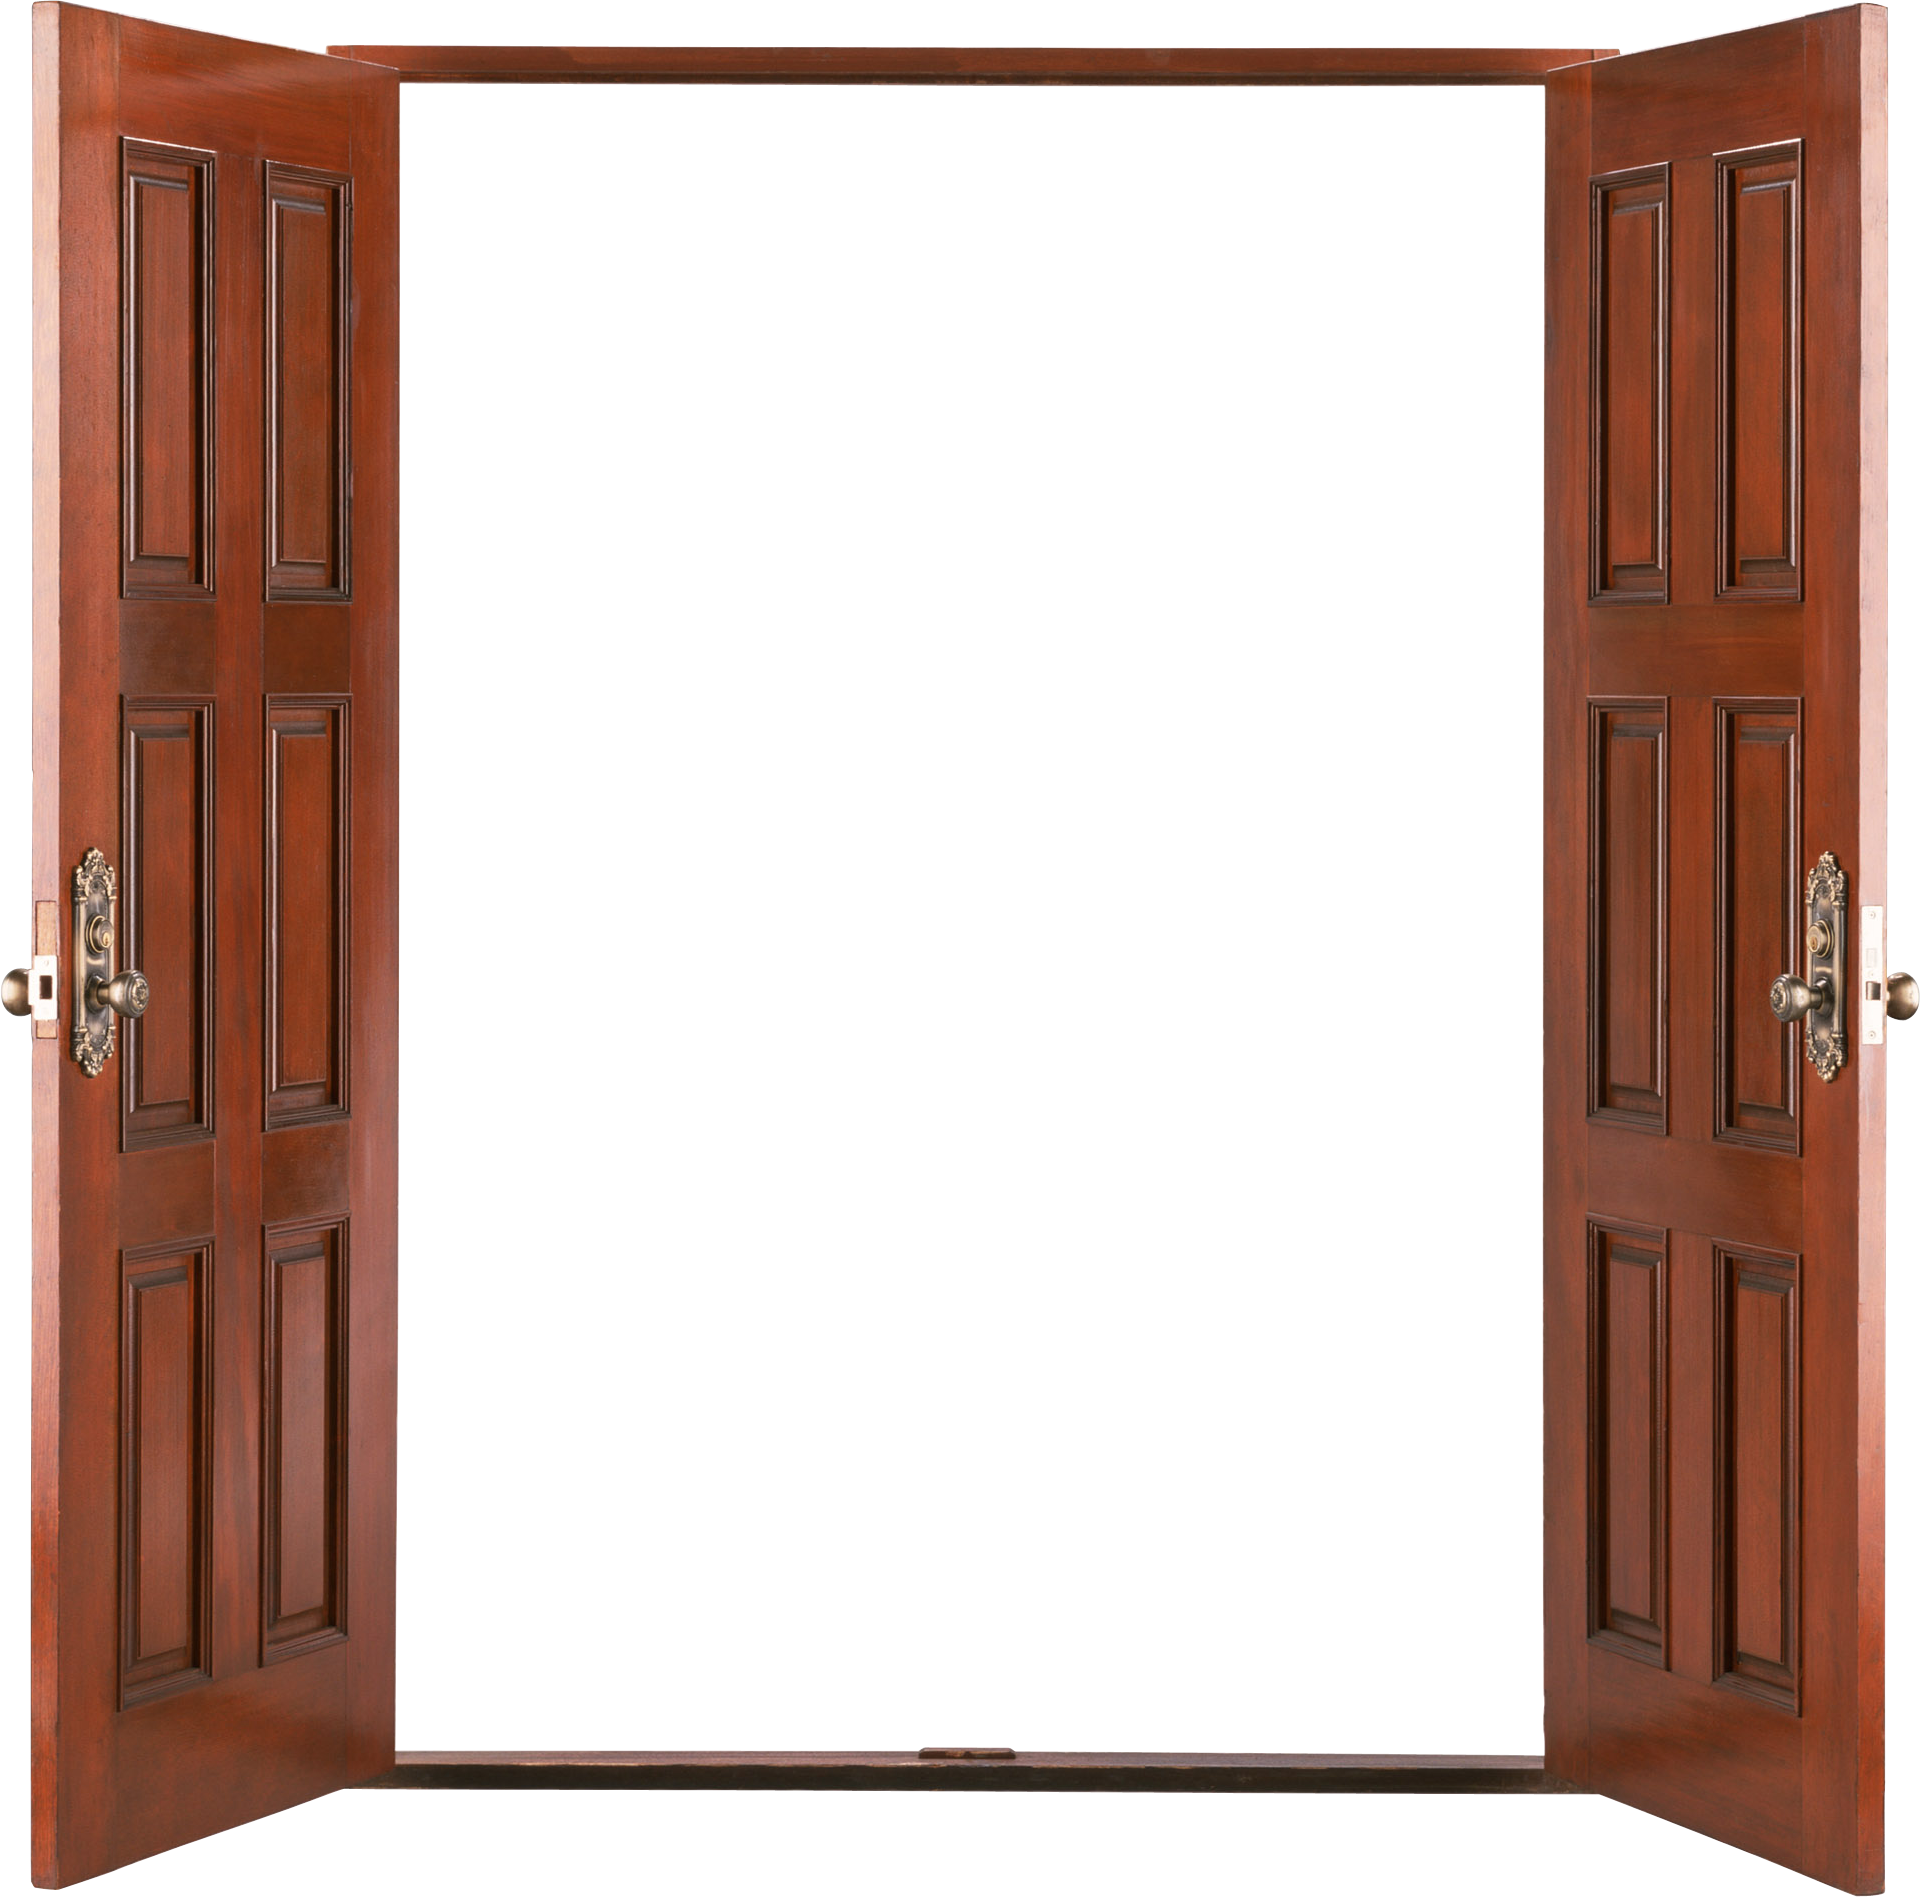 Open Wooden Door - Wooden Open Double Door Clipart (1920x1897), Png Download